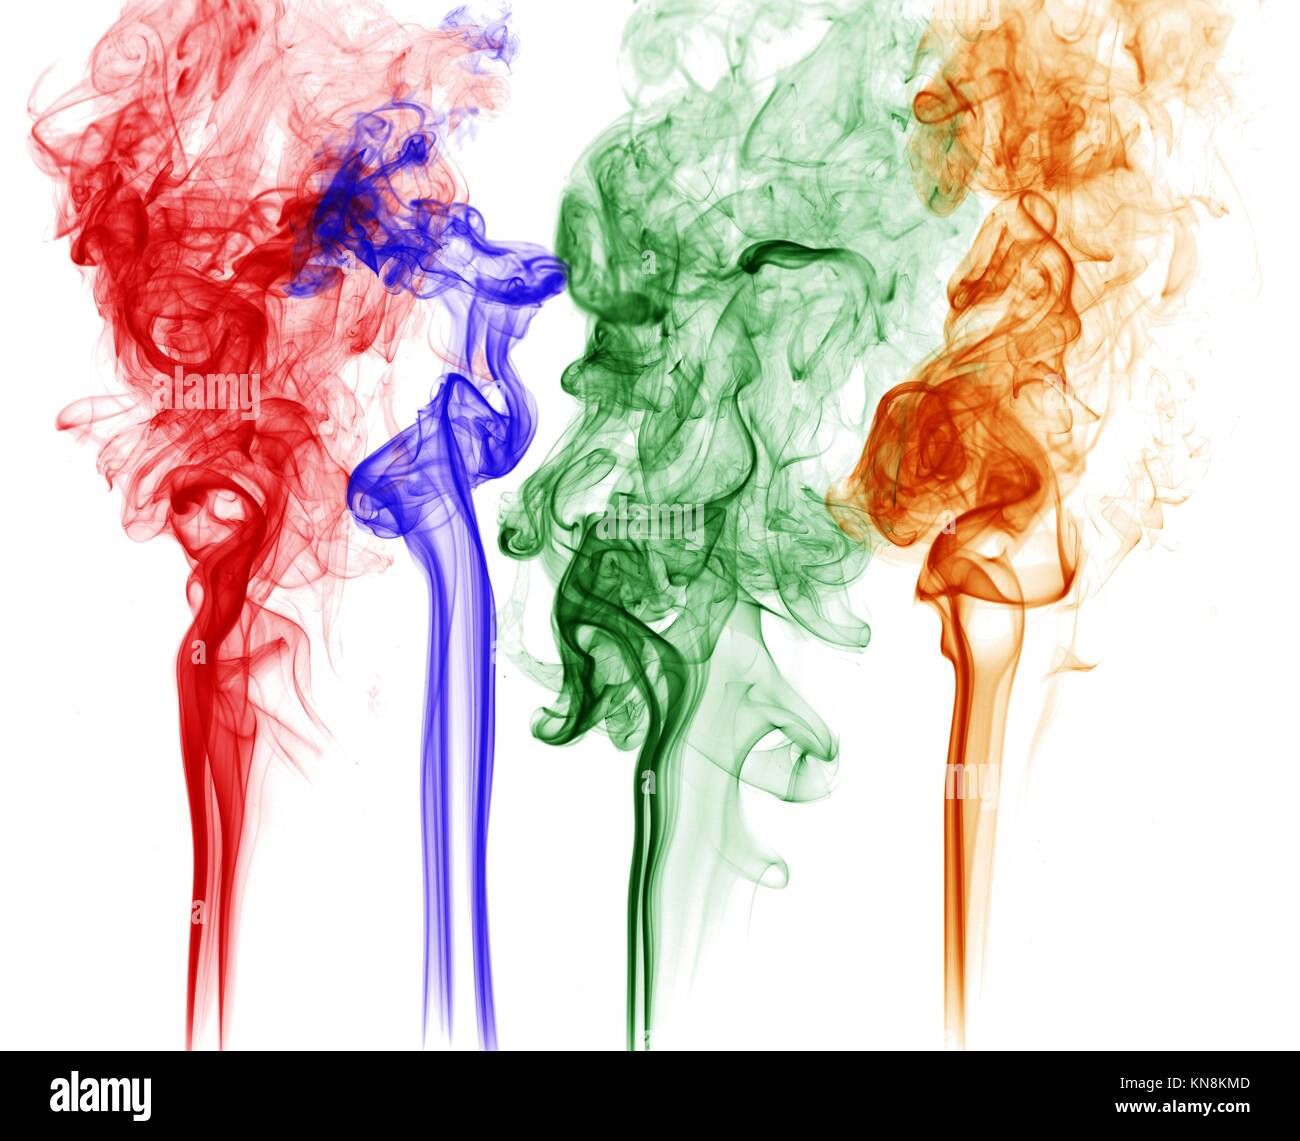 Farbiger Rauch Stockfotos Und Bilder Kaufen Alamy